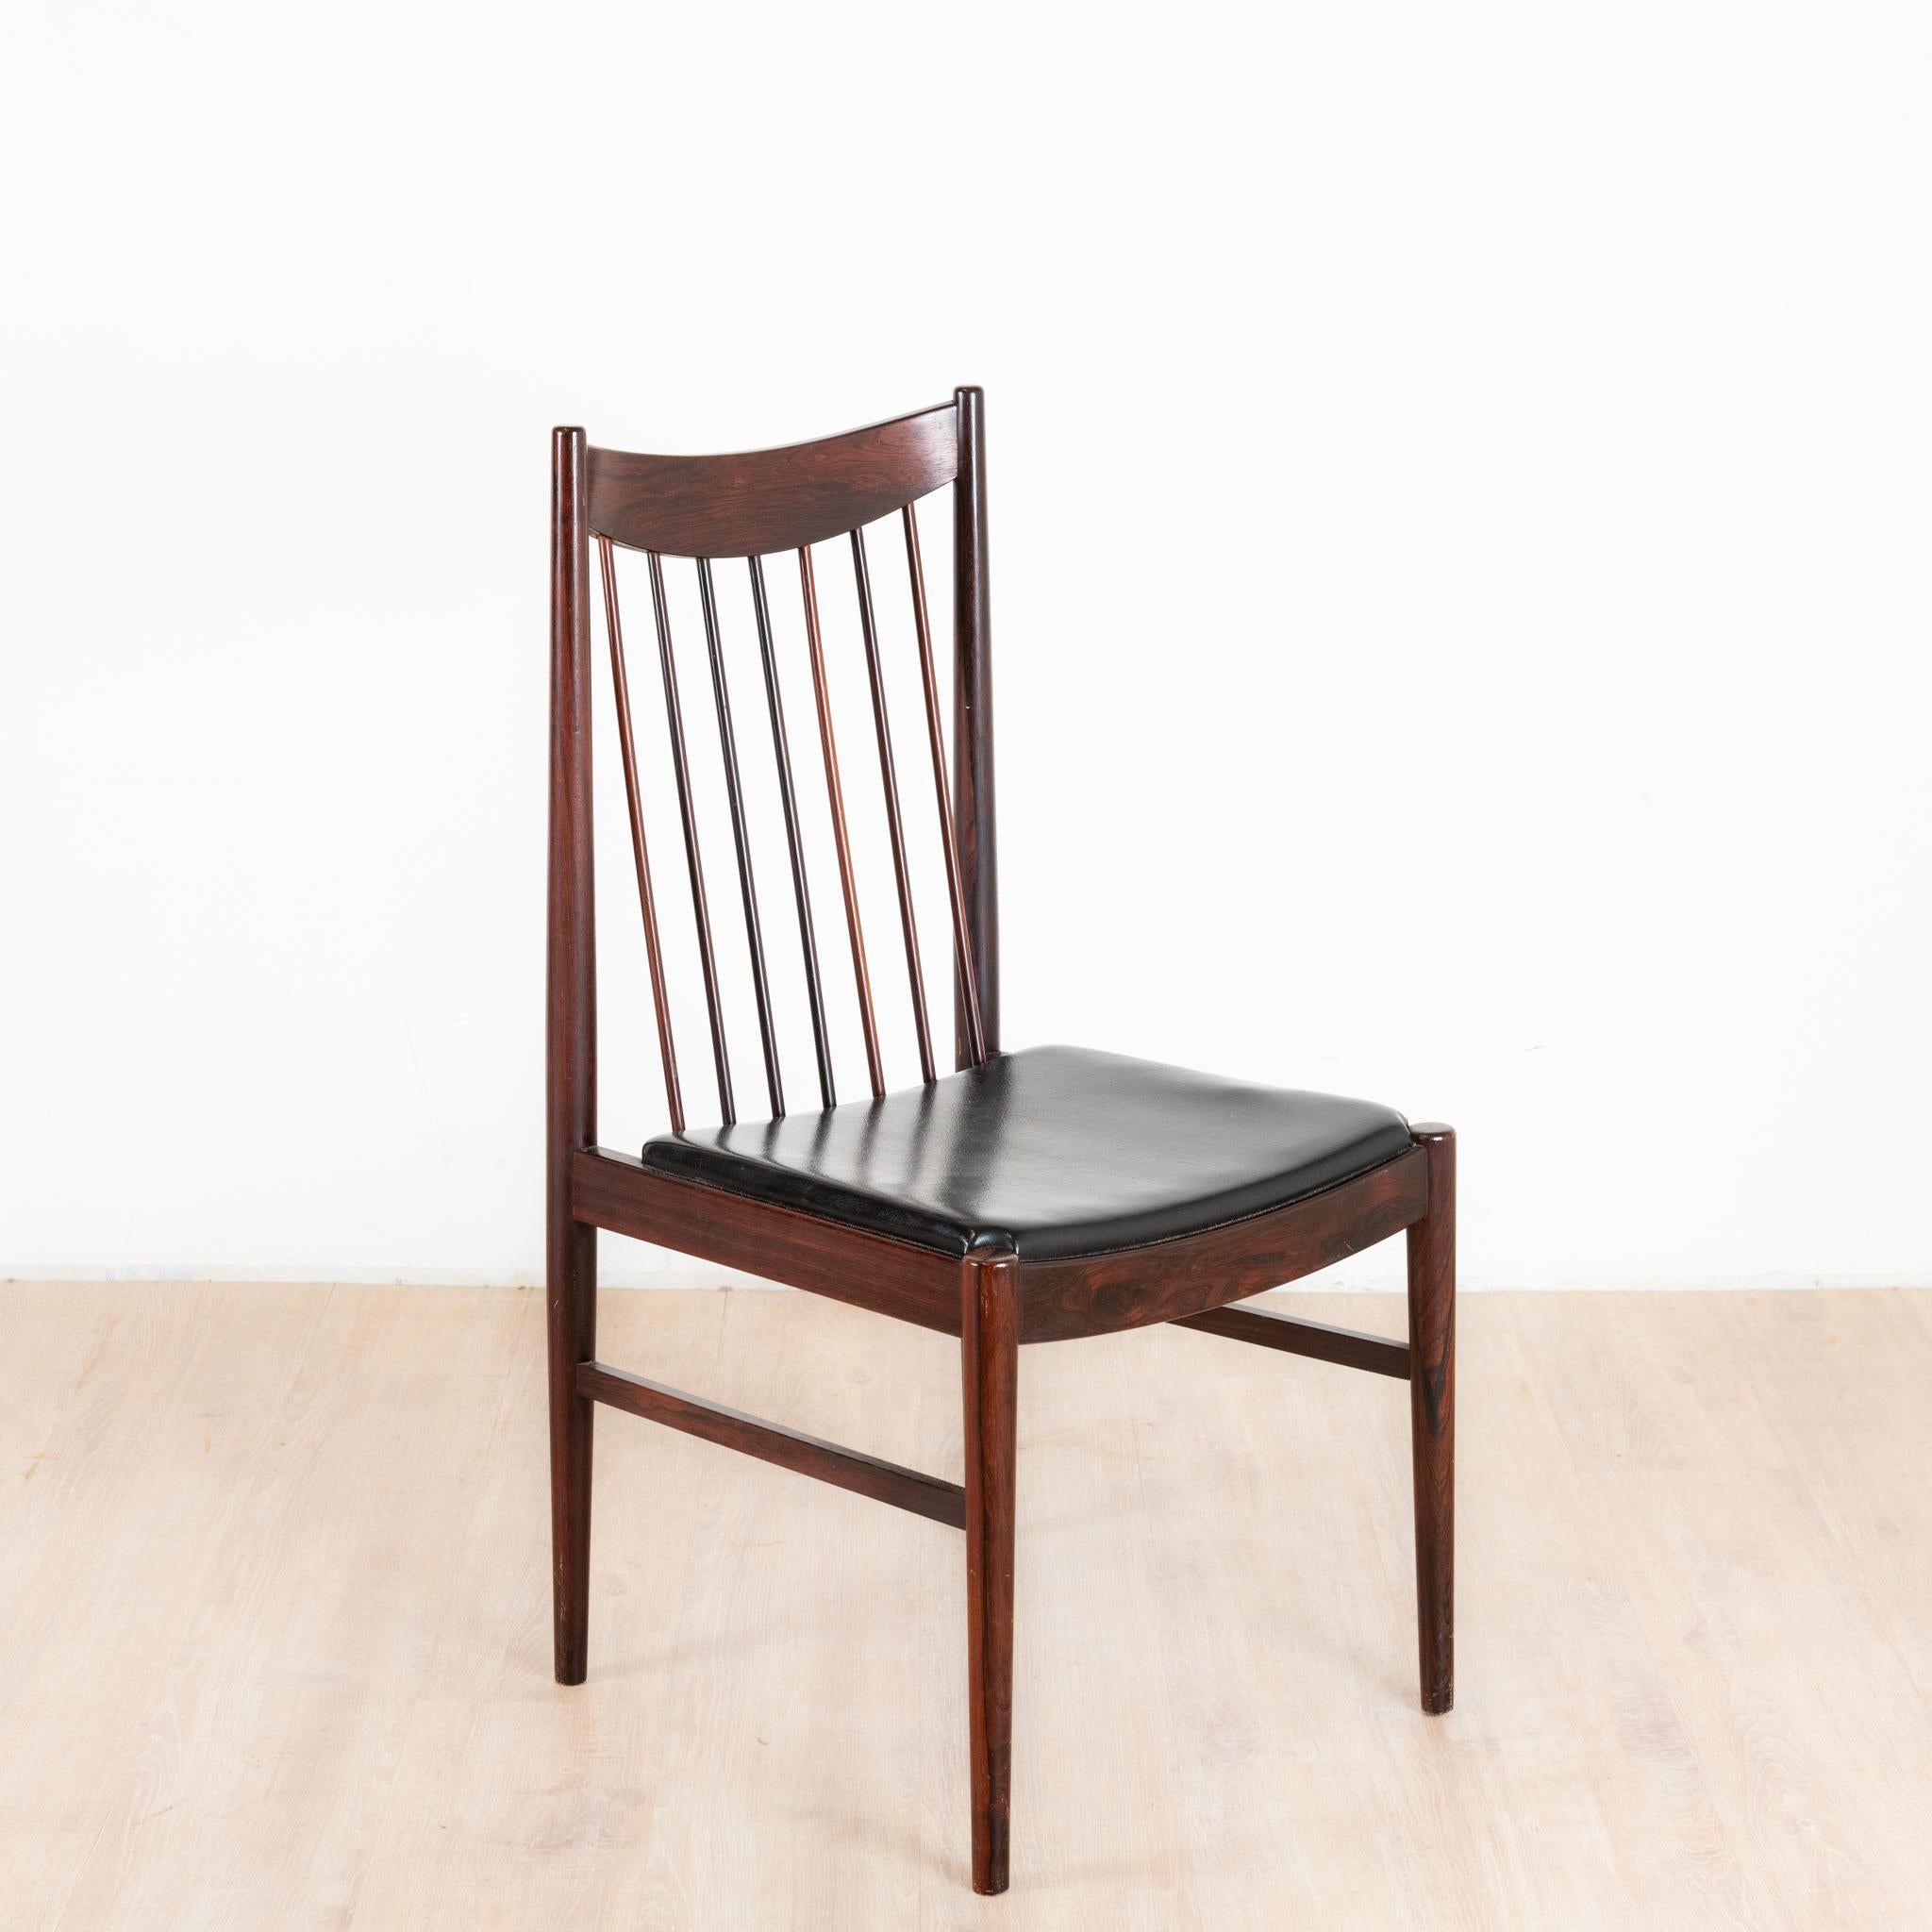 Superbe ensemble de 6 chaises en palissandre de Arne Vodder pour Sibast furniture travail danois des années 1960 palissandre de rio massif assis en cuir noir. Provenance des 6 chaises en palissandre de rio d'Arne Vodder pour Sibast Furniture 